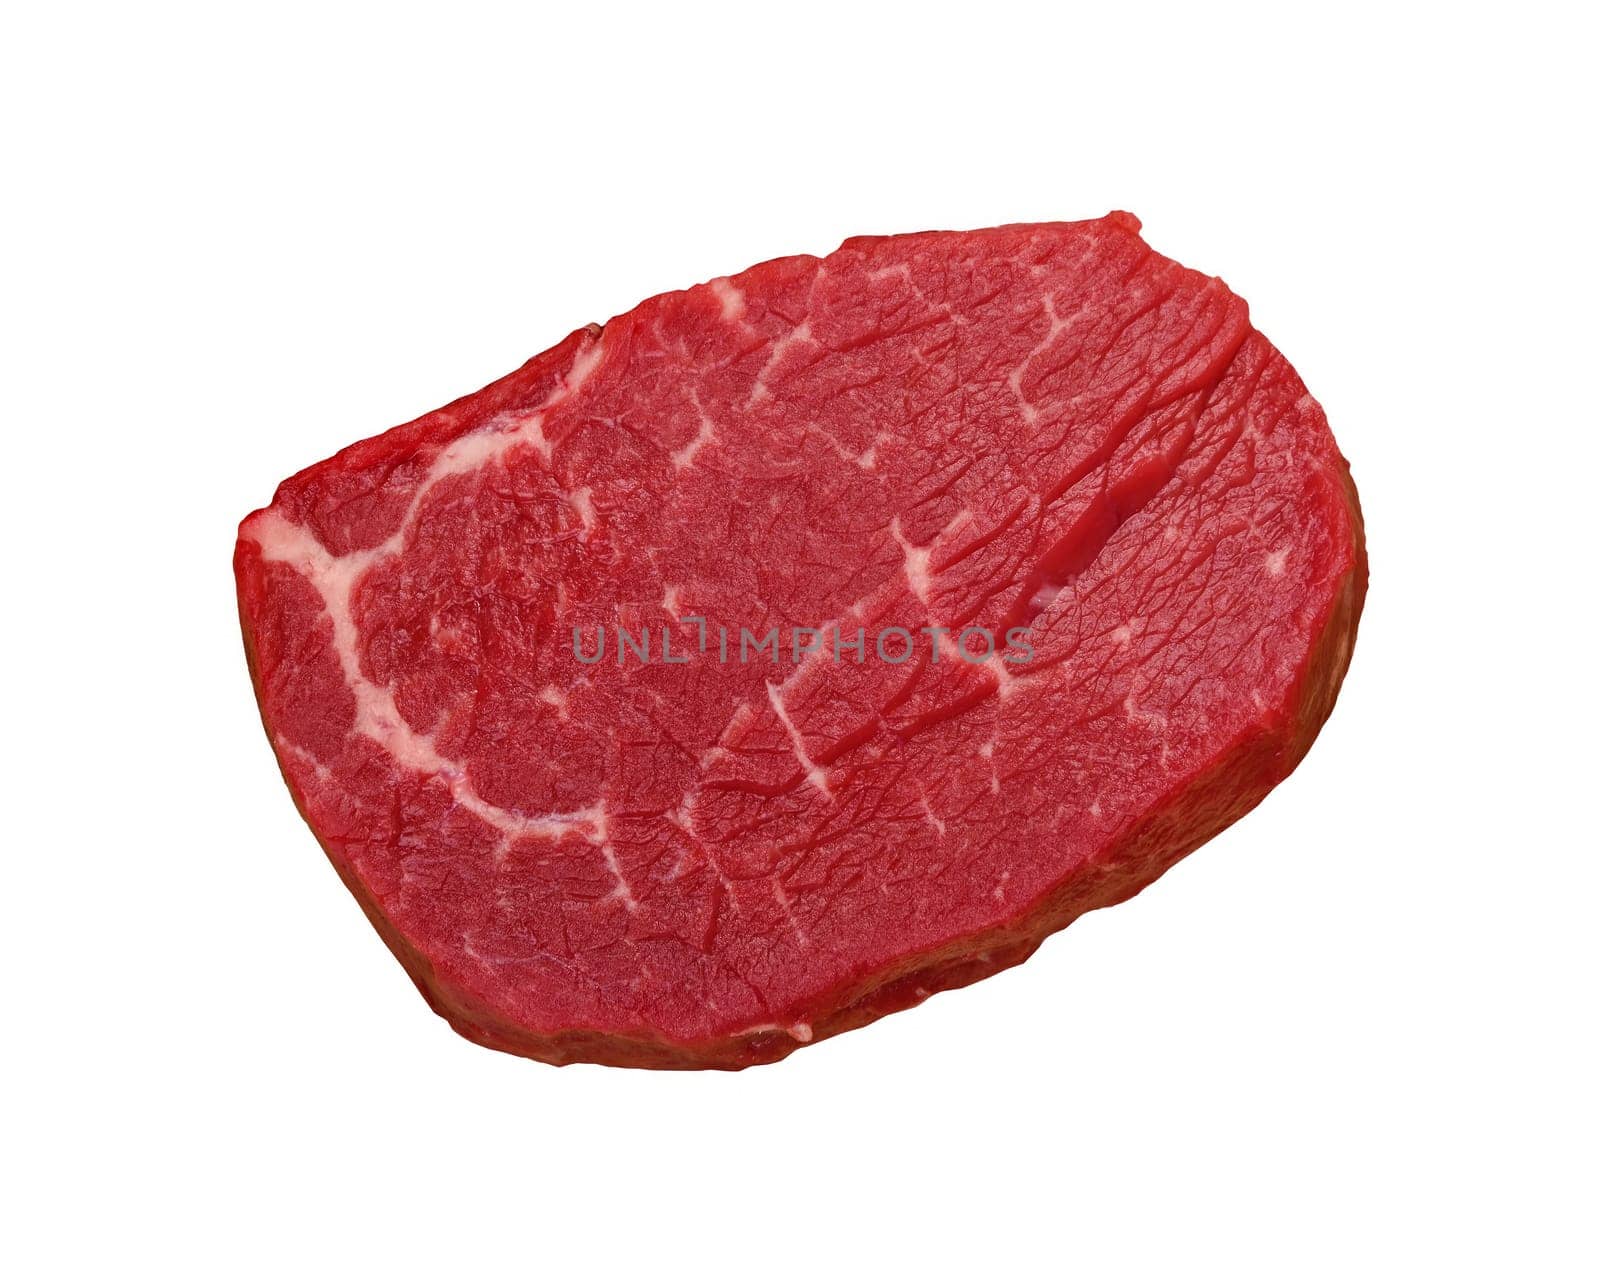 Raw beef tenderloin steak on white by BreakingTheWalls